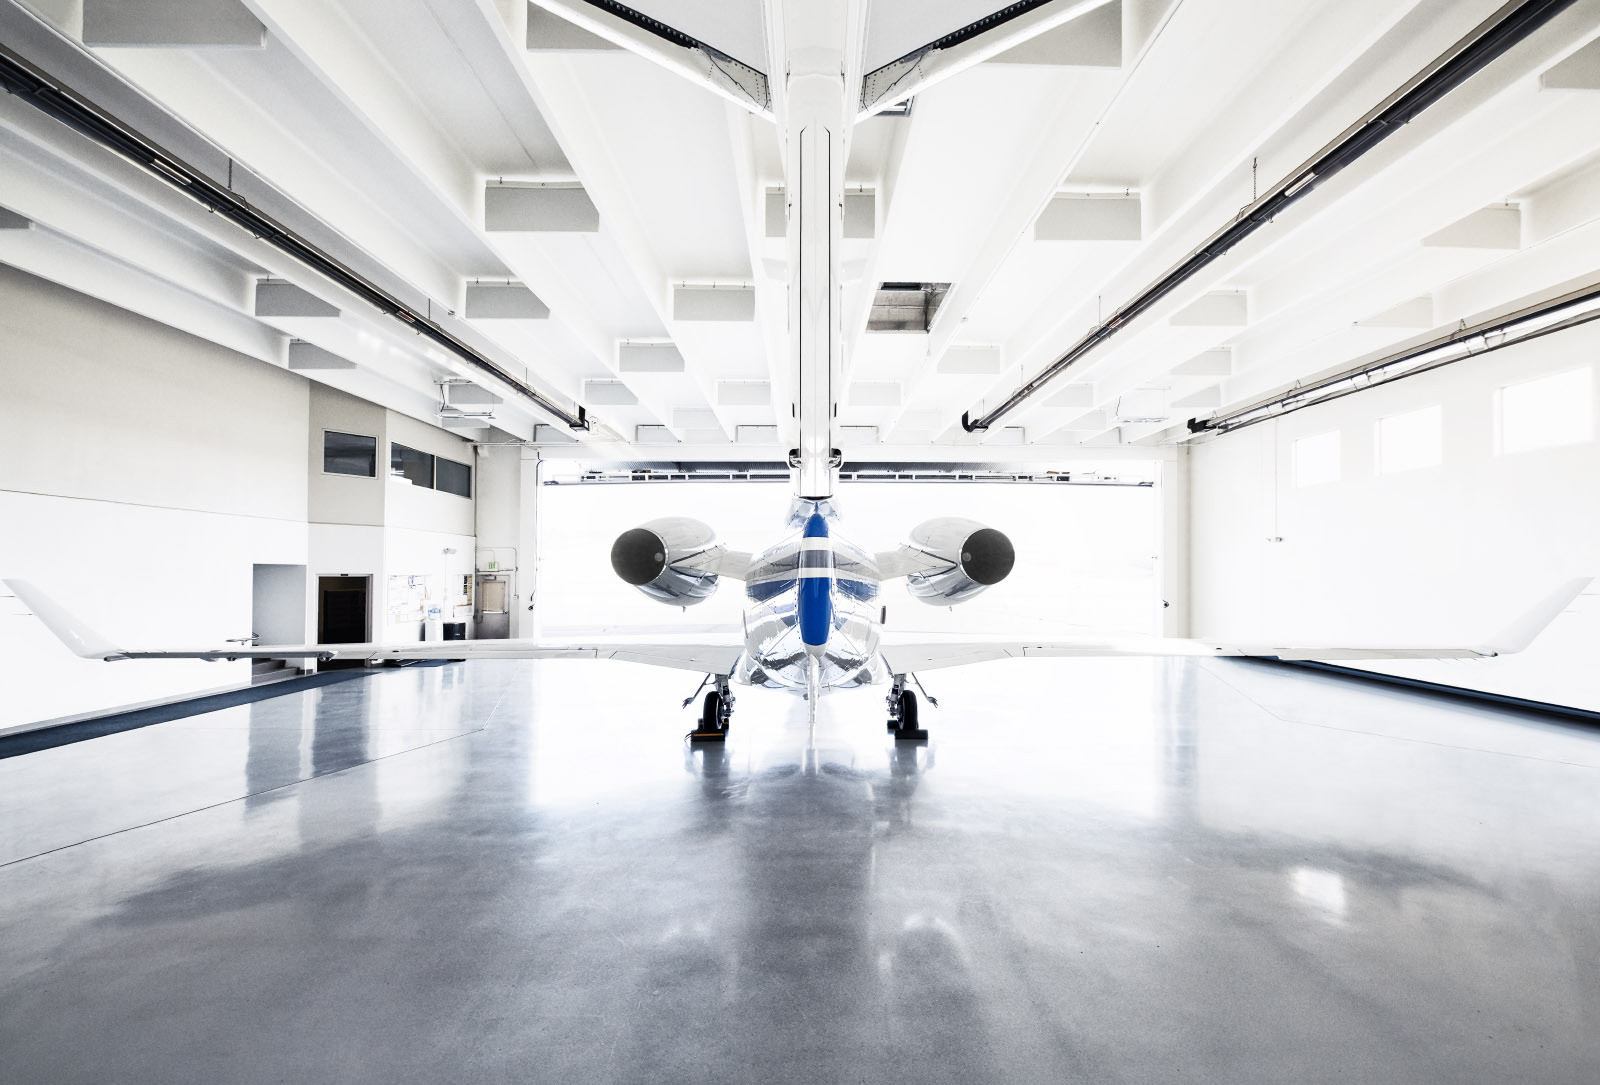 Das Flugzeug im Hangar von Hinten fotografiert